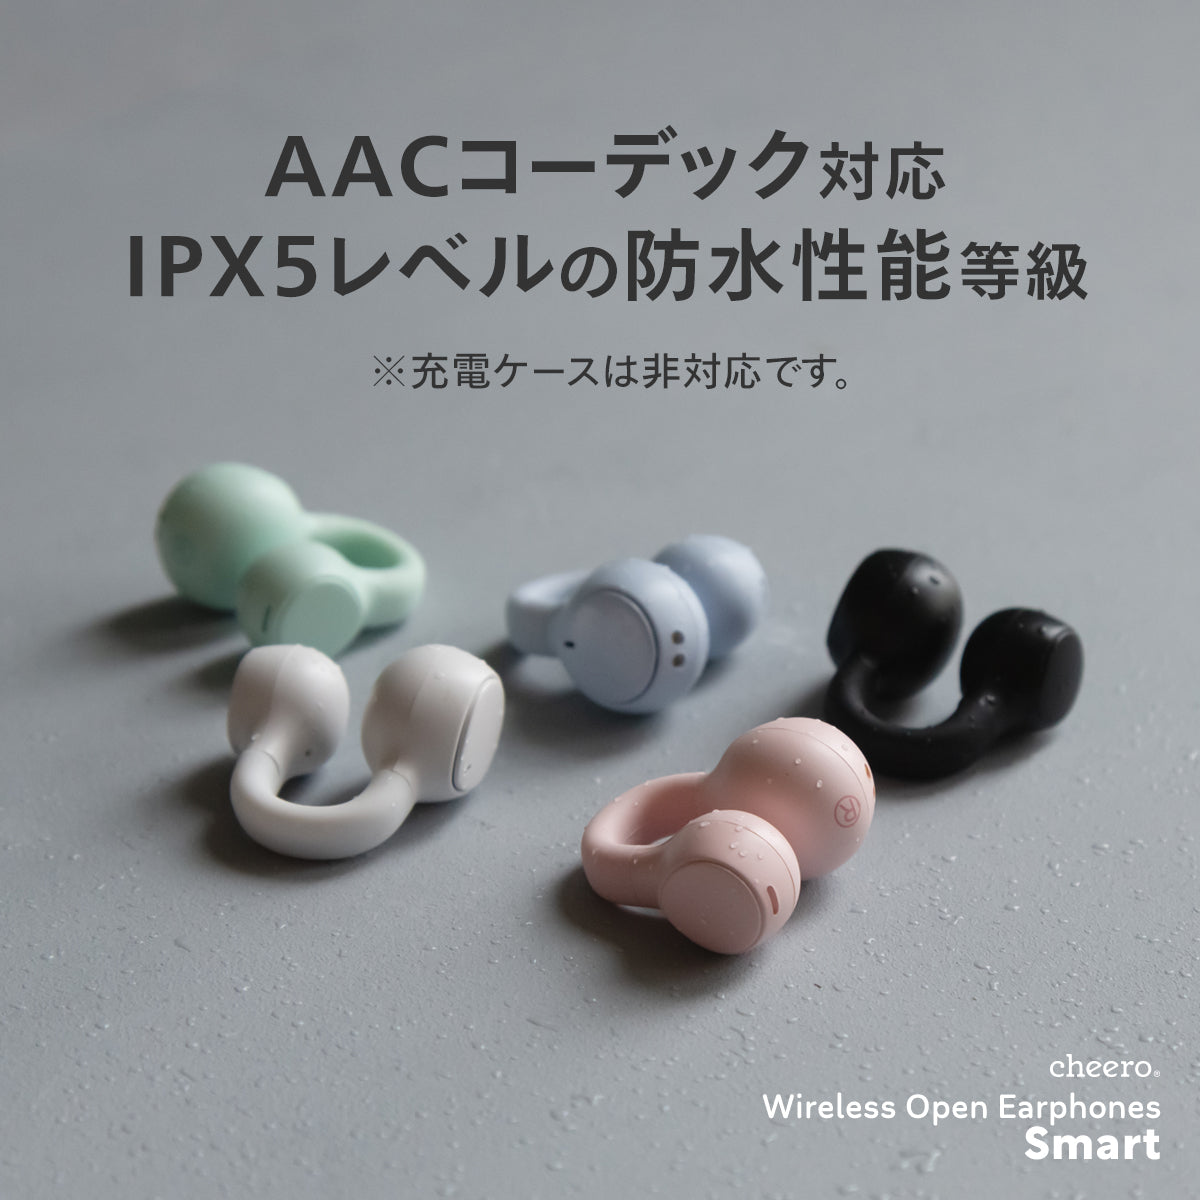 cheero Wireless Open Earphones Smart